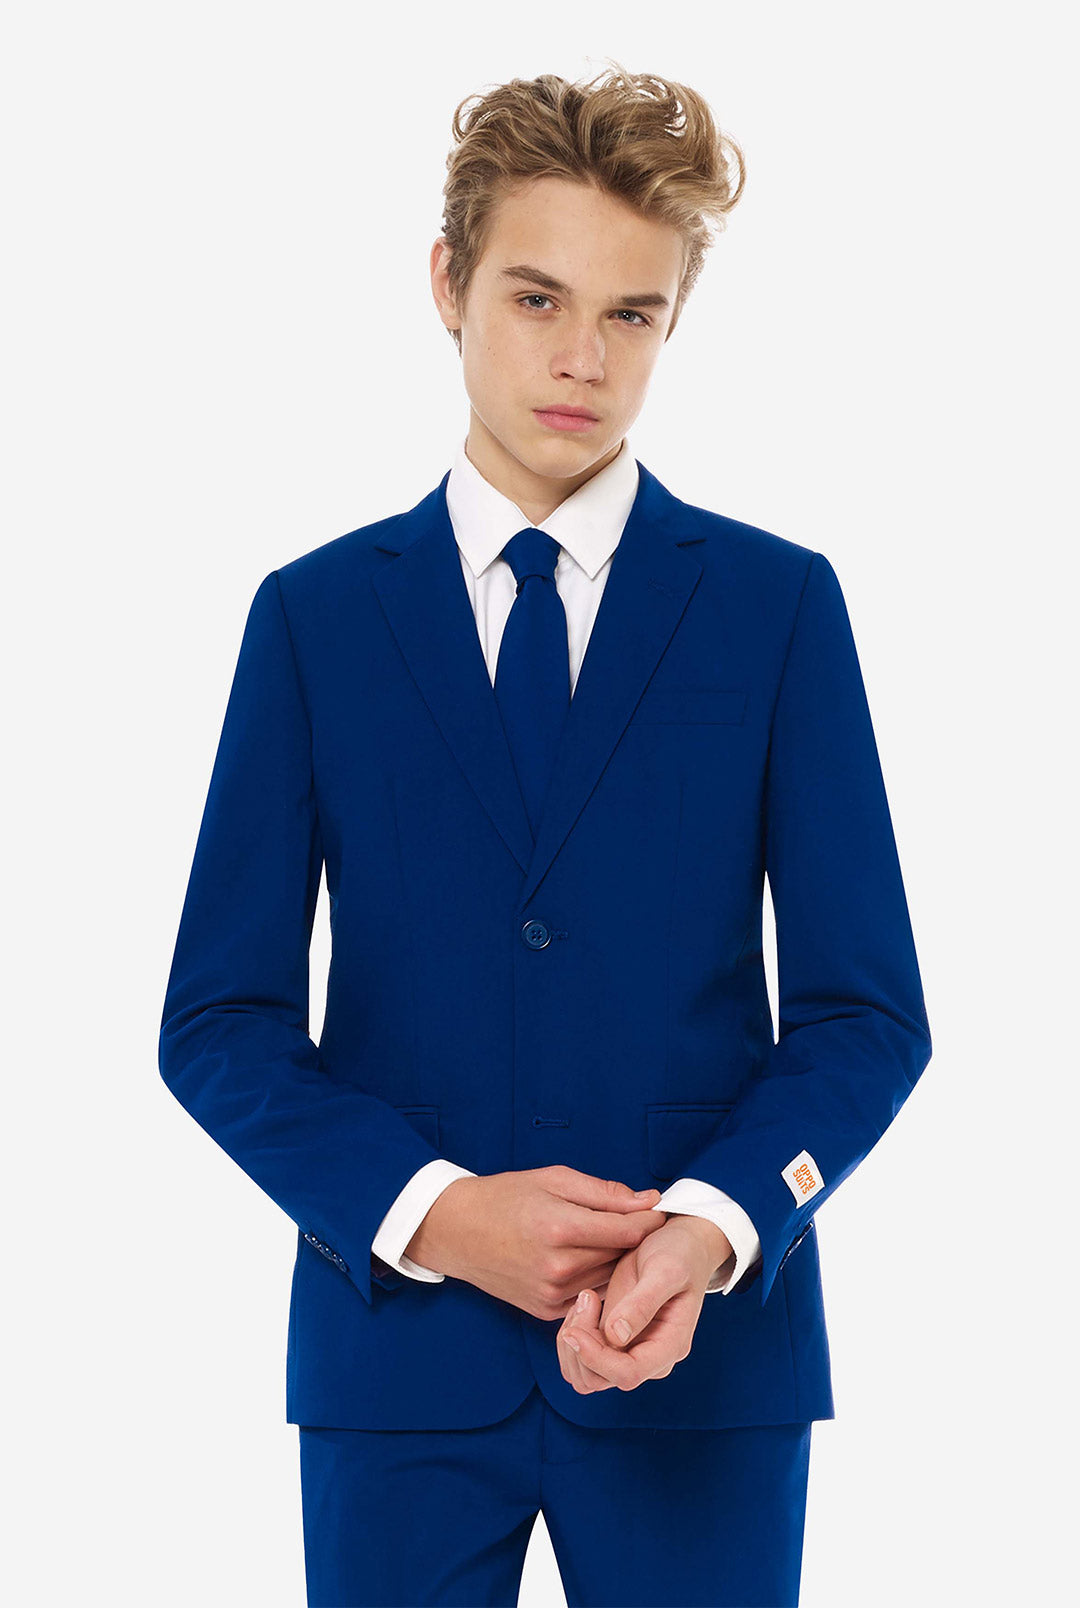 Collin Dark Blue Suit By Ike Behar - Rental Style